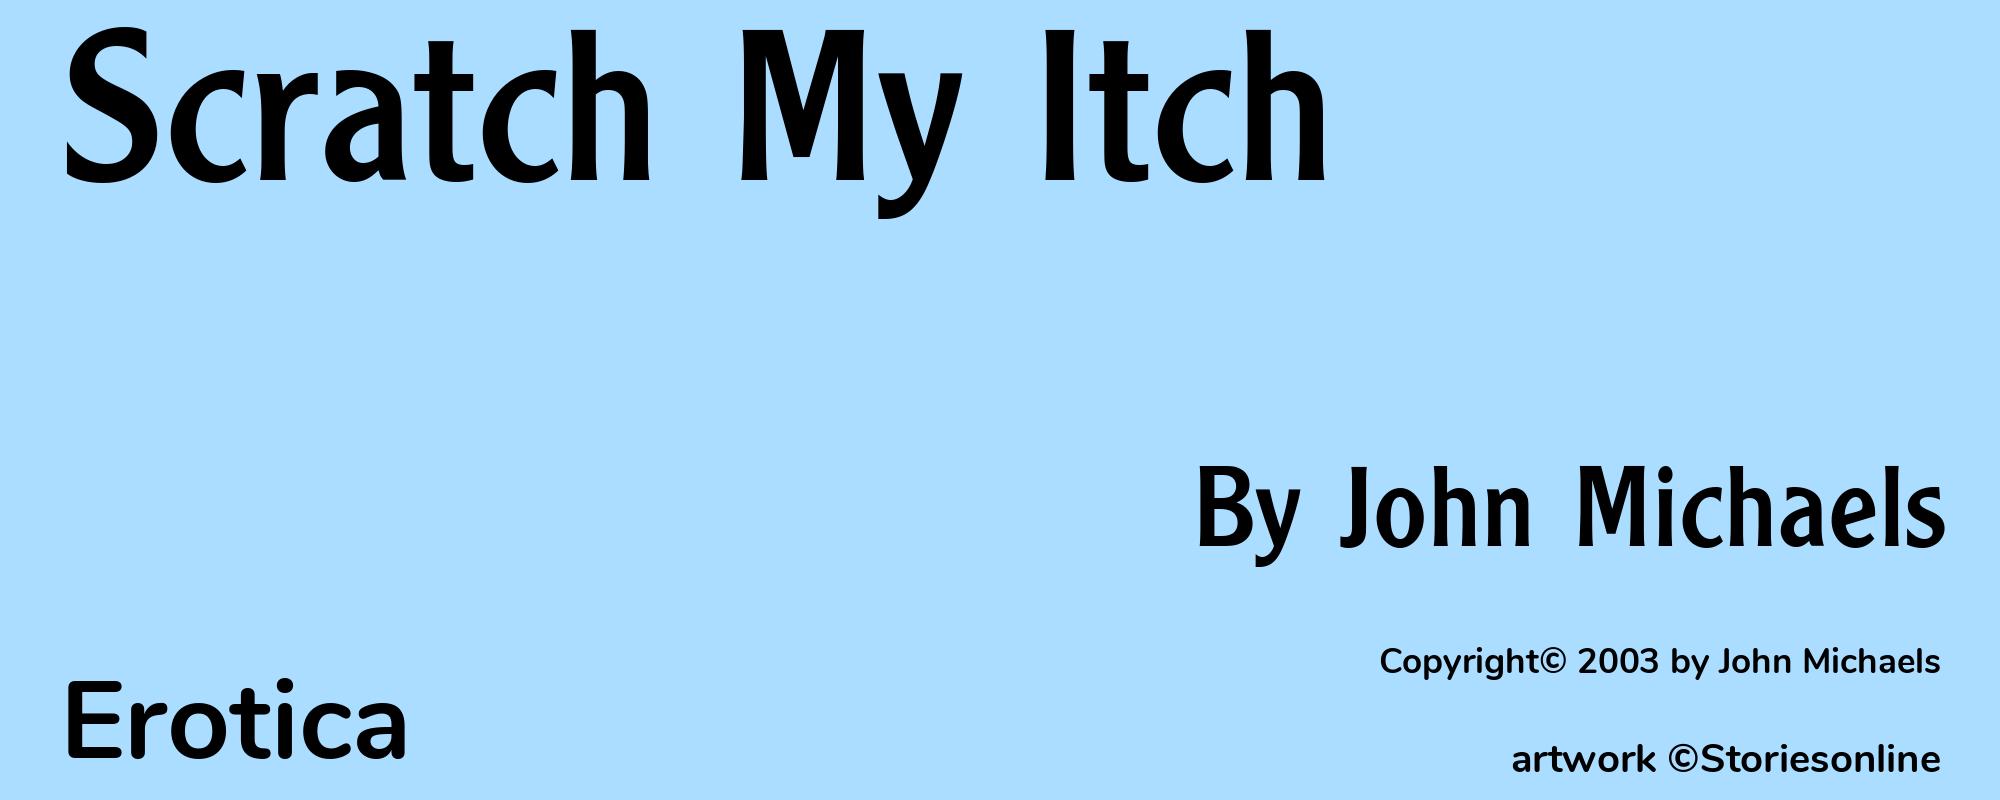 Scratch My Itch - Cover